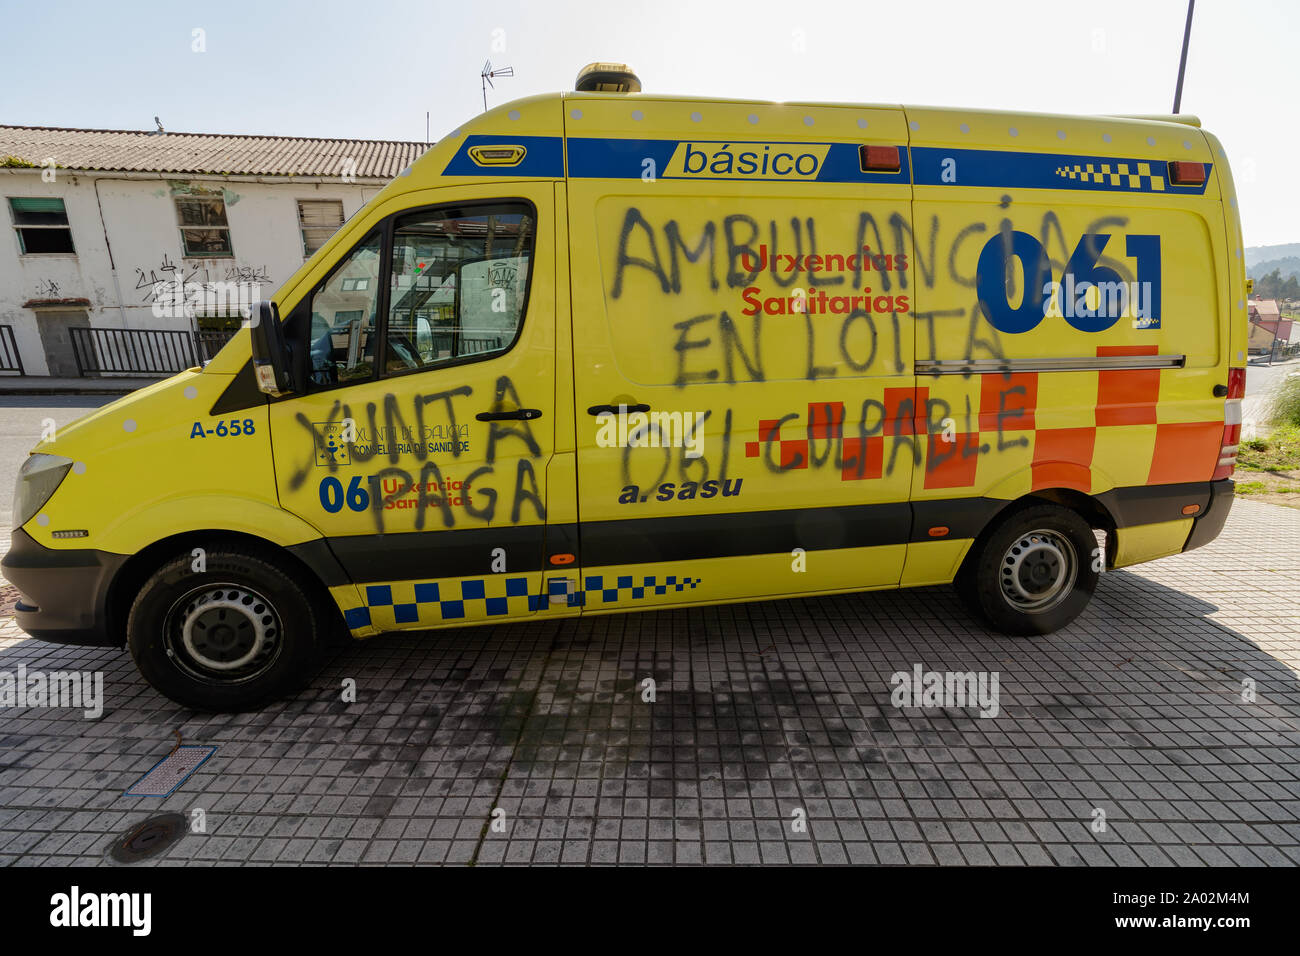 Cambre / Spain - March 16 2016: vandalised ambulance in Cambre La Coruna Spain Stock Photo